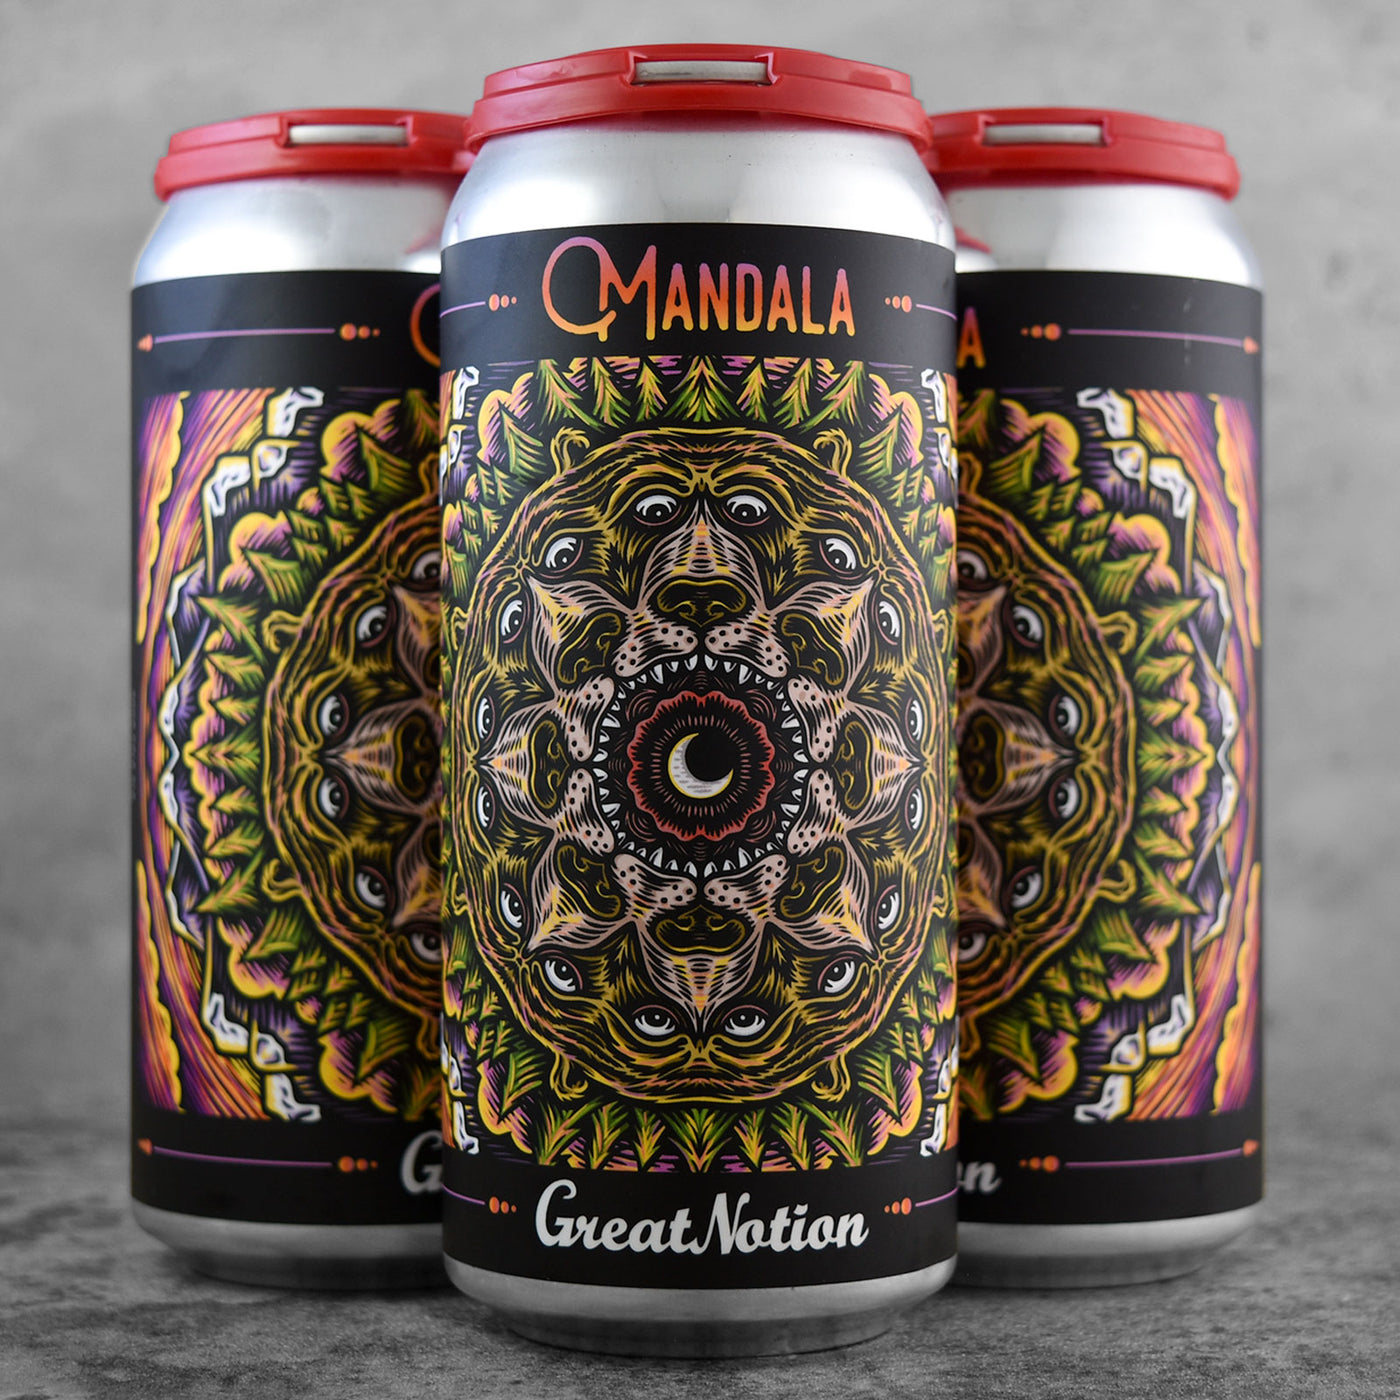 Great Notion Mandala - "Limit 2"